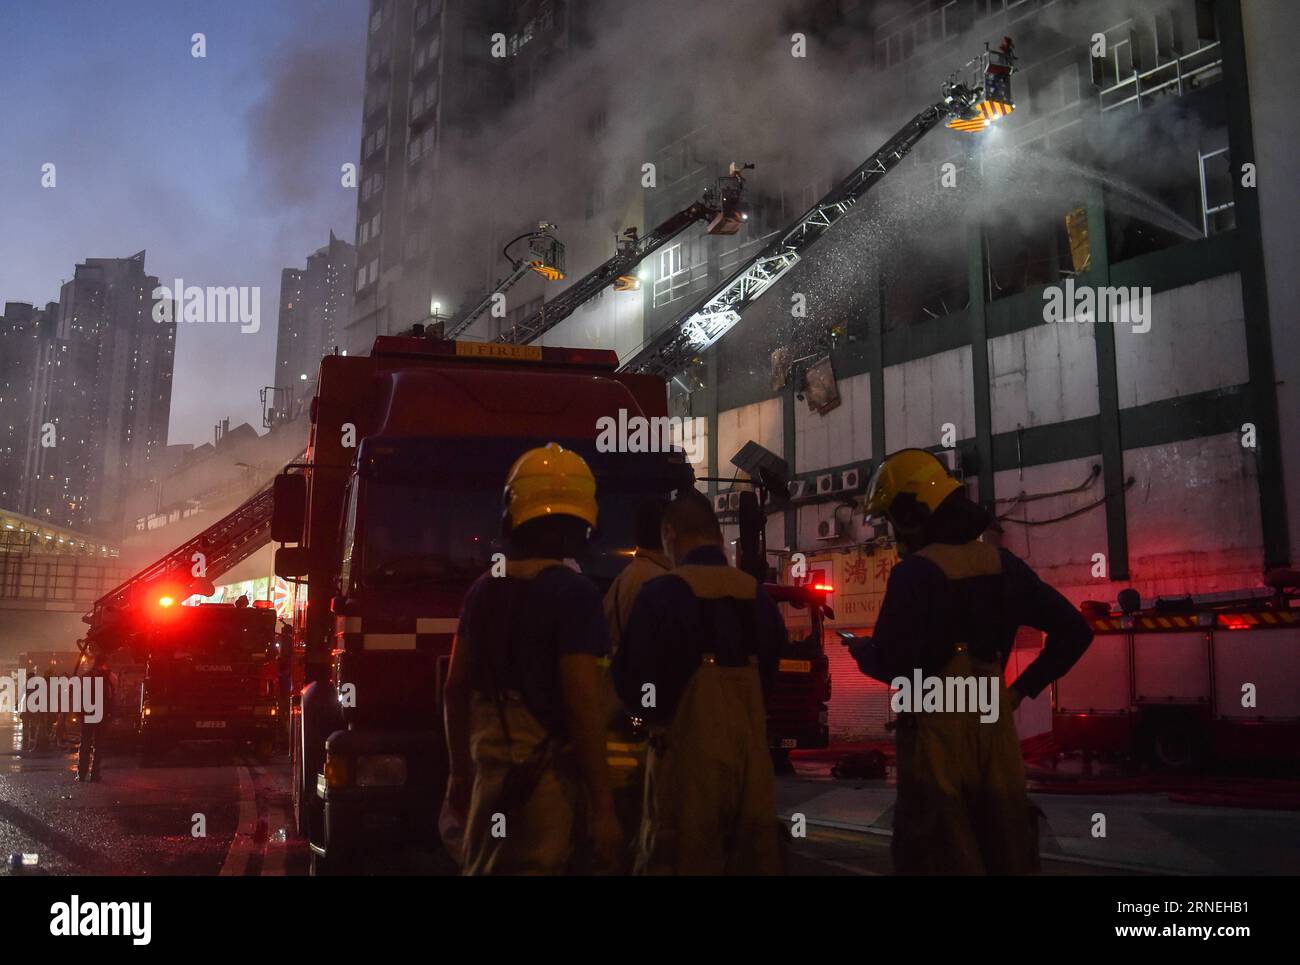 Hong Kong : marque à Industriegebäude HONG KONG, le 23 juin 2016 -- les pompiers travaillent pour éteindre le feu dans un bâtiment industriel de plusieurs étages dans la région de East Kowloon à Hong Kong, dans le sud de la Chine, le 23 juin 2016. Un deuxième pompier est mort jeudi soir après avoir combattu un incendie à quatre alarmes qui a fait rage pendant plus de deux jours dans un bâtiment industriel de Kowloon Bay. (Cxy) HONG KONG-FIRE-CASUALTY (CN) NgxWingxKin PUBLICATIONxNOTxINxCHN marque de Hong Kong dans les bâtiments industriels Hong Kong juin 23 2016 des pompiers travaillent à éteindre un incendie DANS un bâtiment industriel à plusieurs étages dans le secteur East Kowloon de Hong Kong sout Banque D'Images